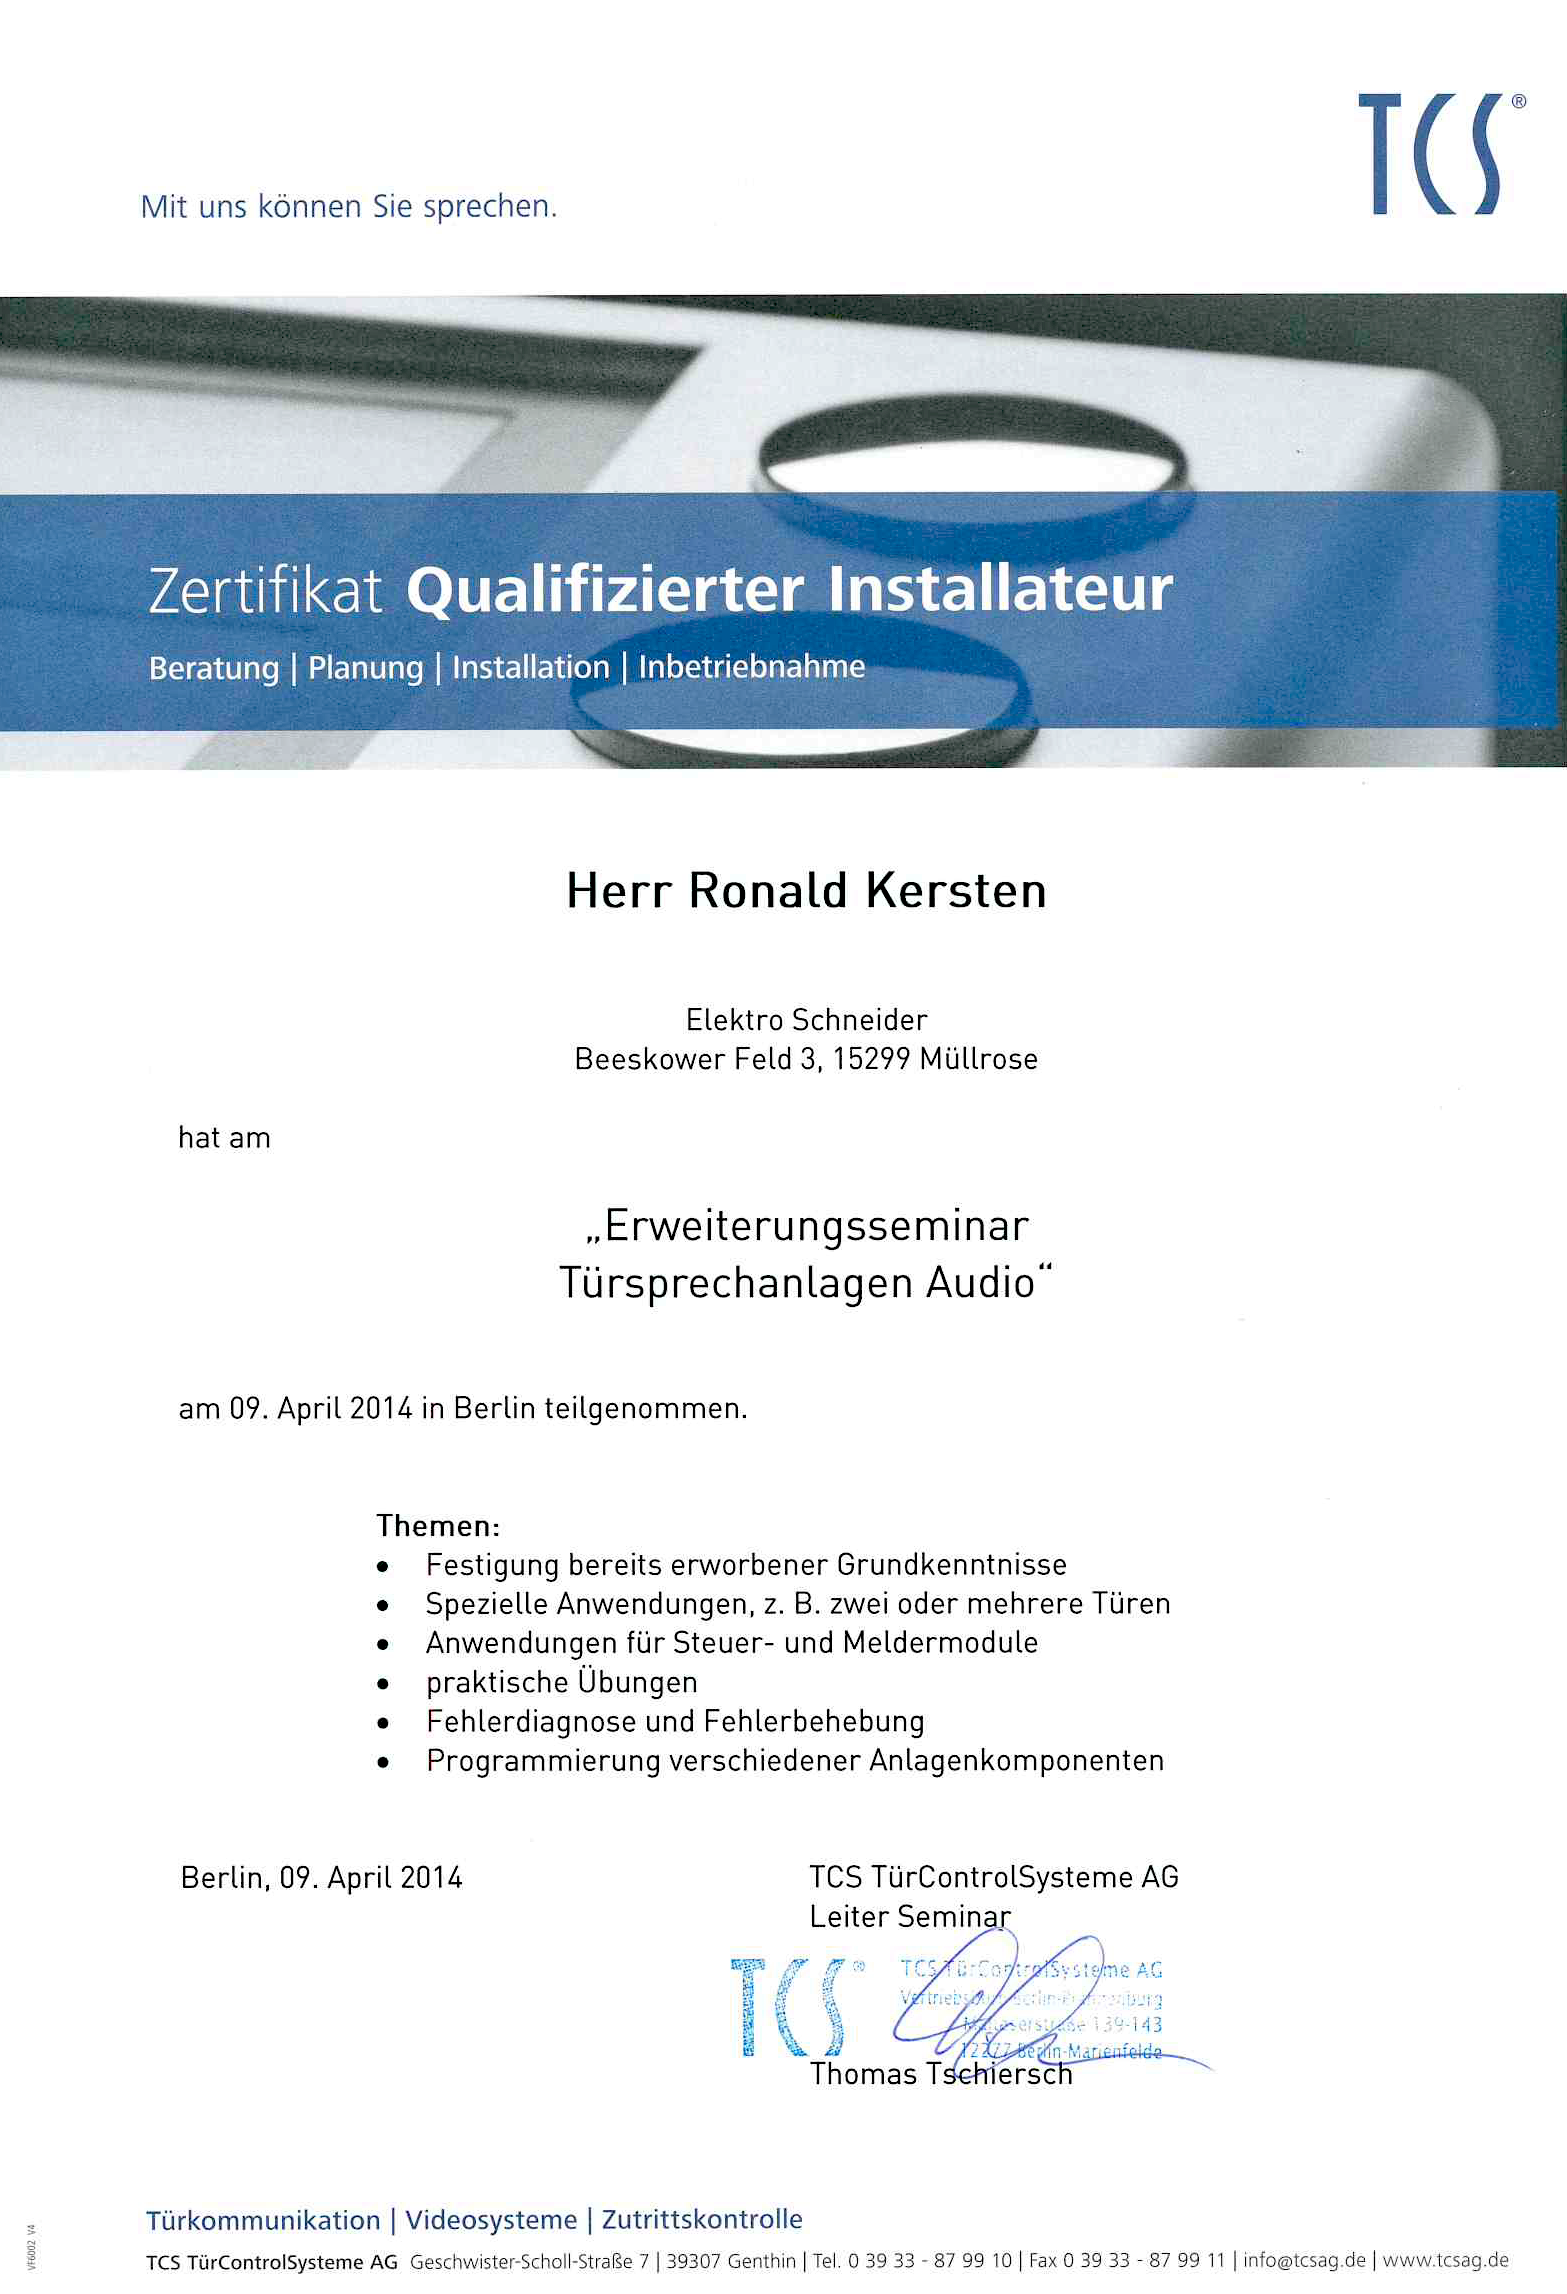 Ronald Kersen; Erweiterungsseminar: Türsprechanlagen Audio